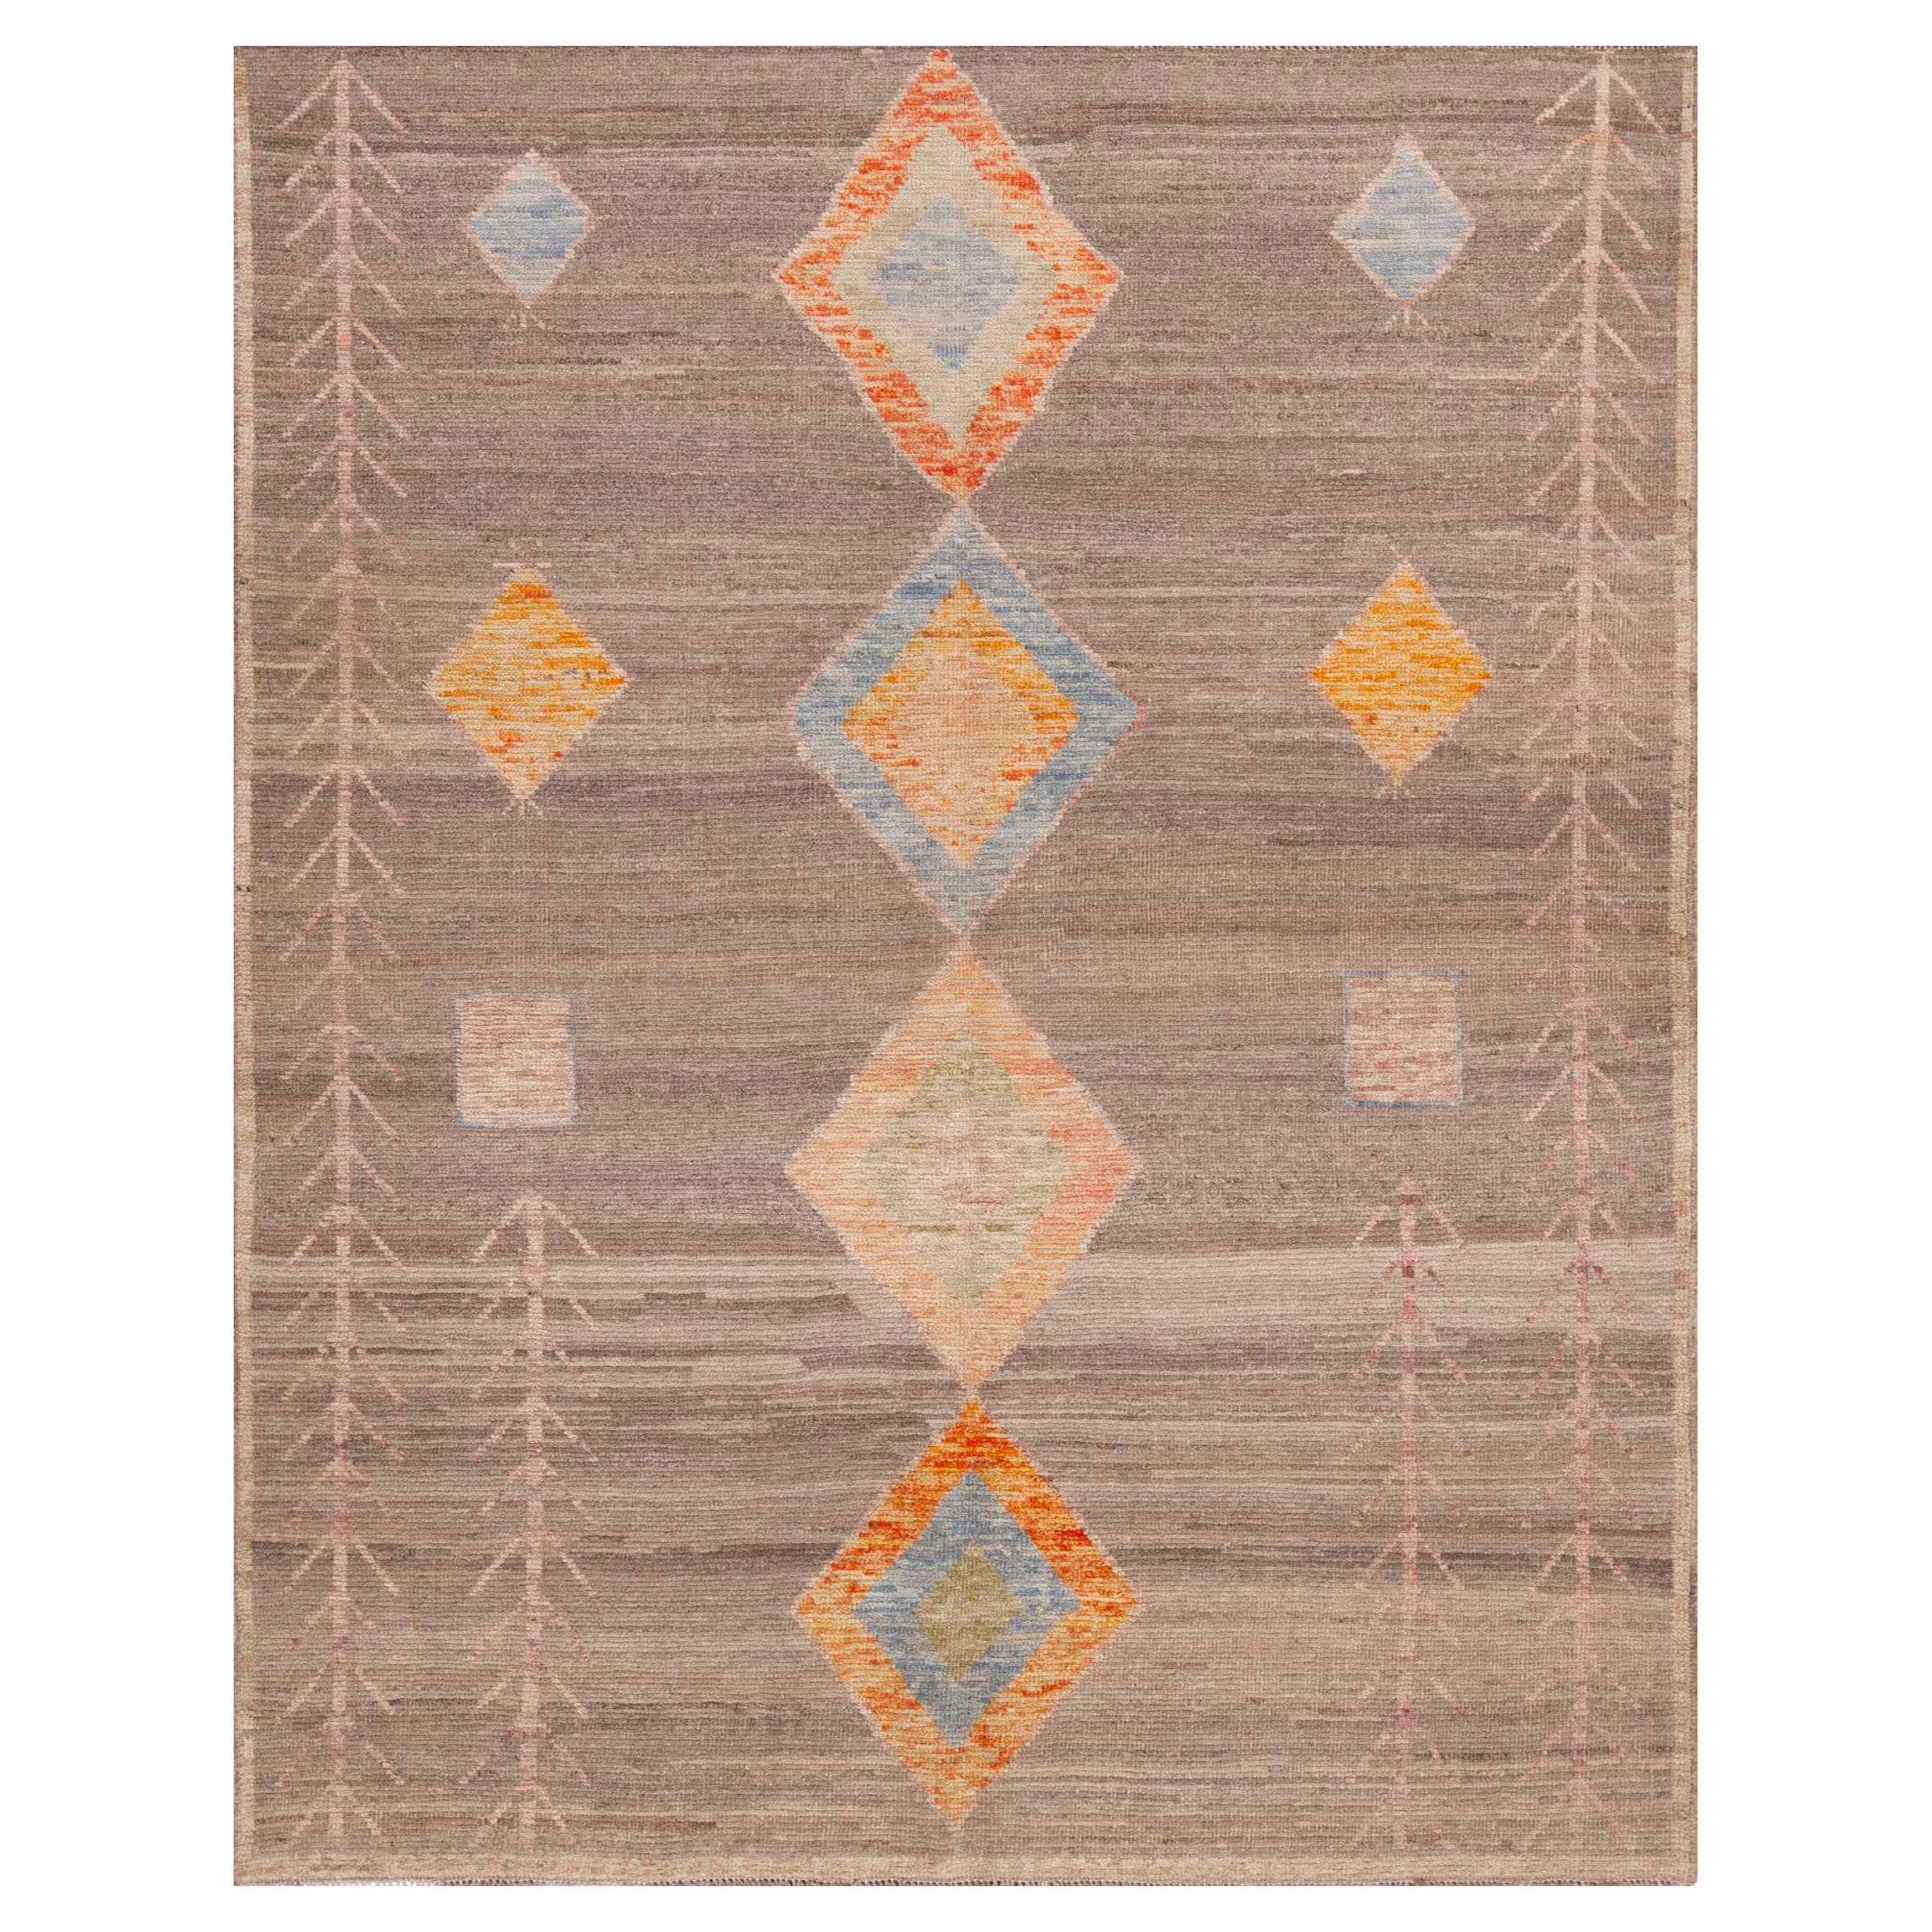 Collection Nazmiyal, petite taille, tapis tribal géométrique de 5'1" x 6'4" en vente